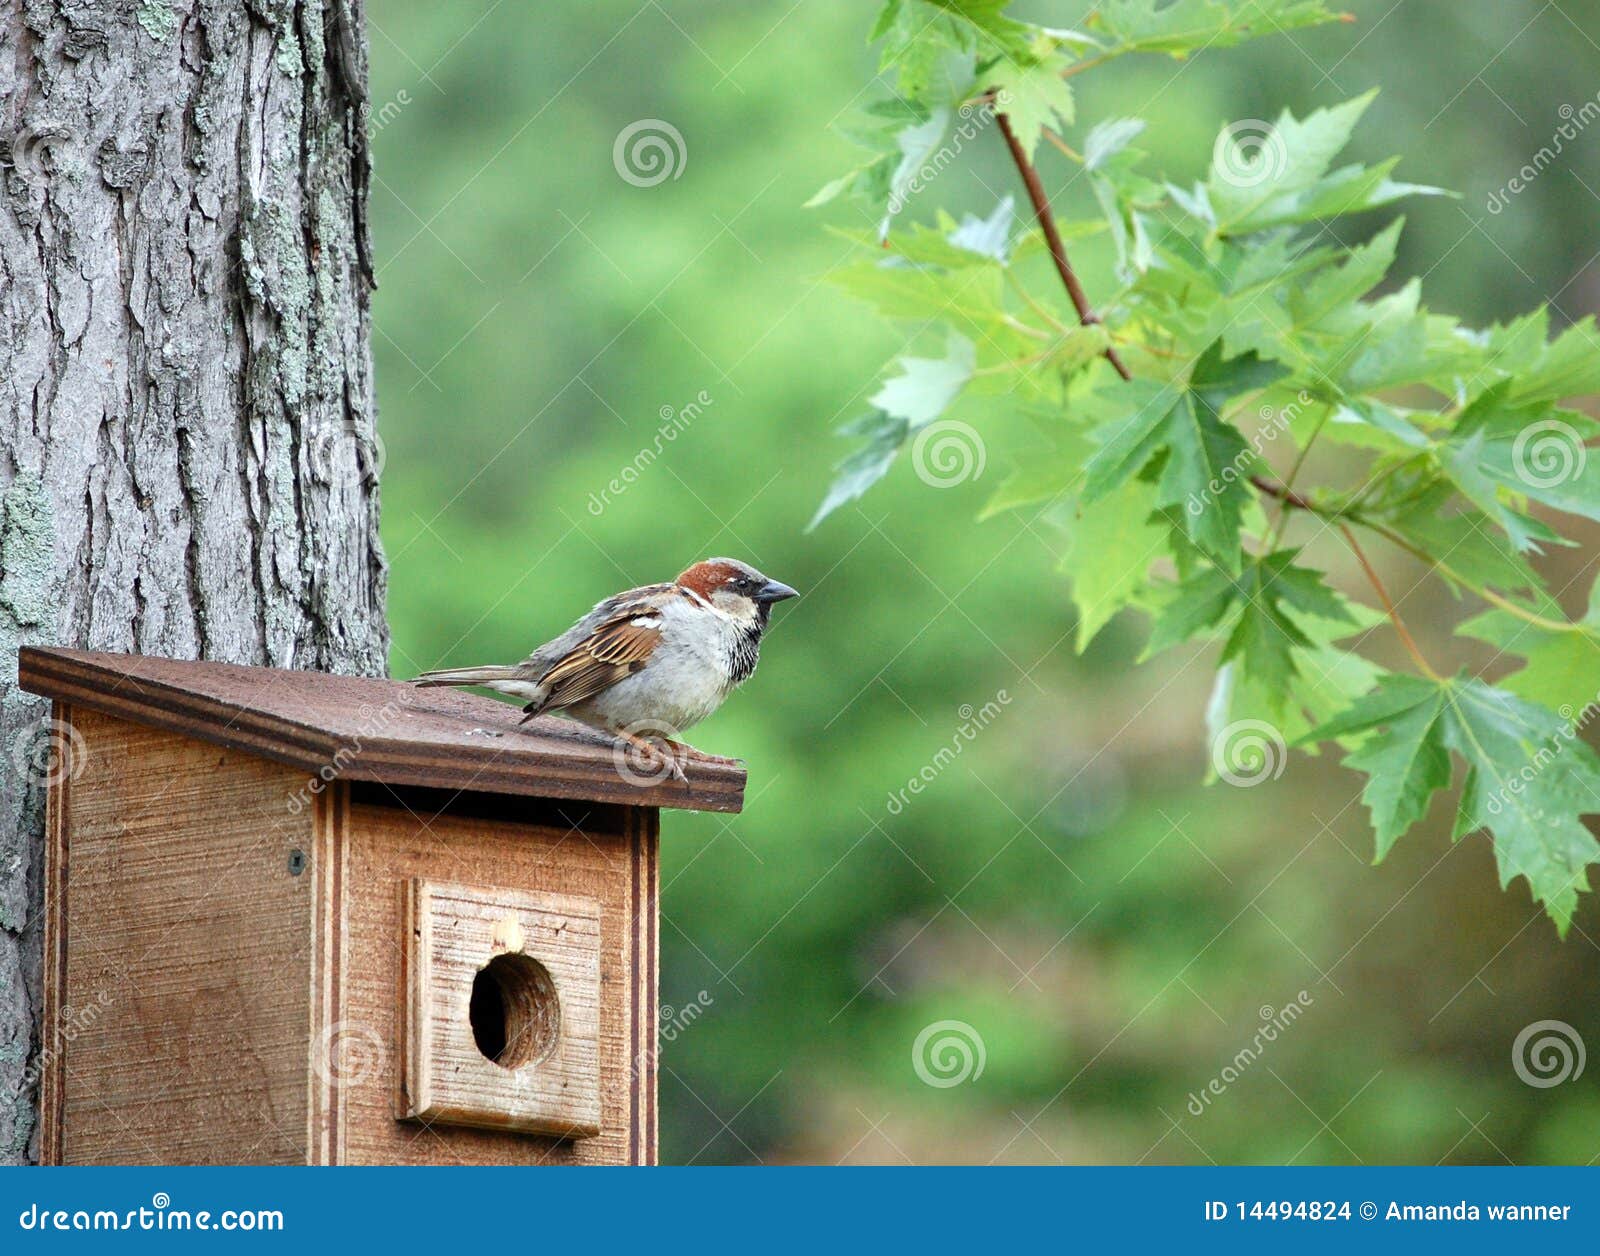 Der Spatz, der auf einem Birdhouse, Eichenzweig gehockt wird, hängt nahe.